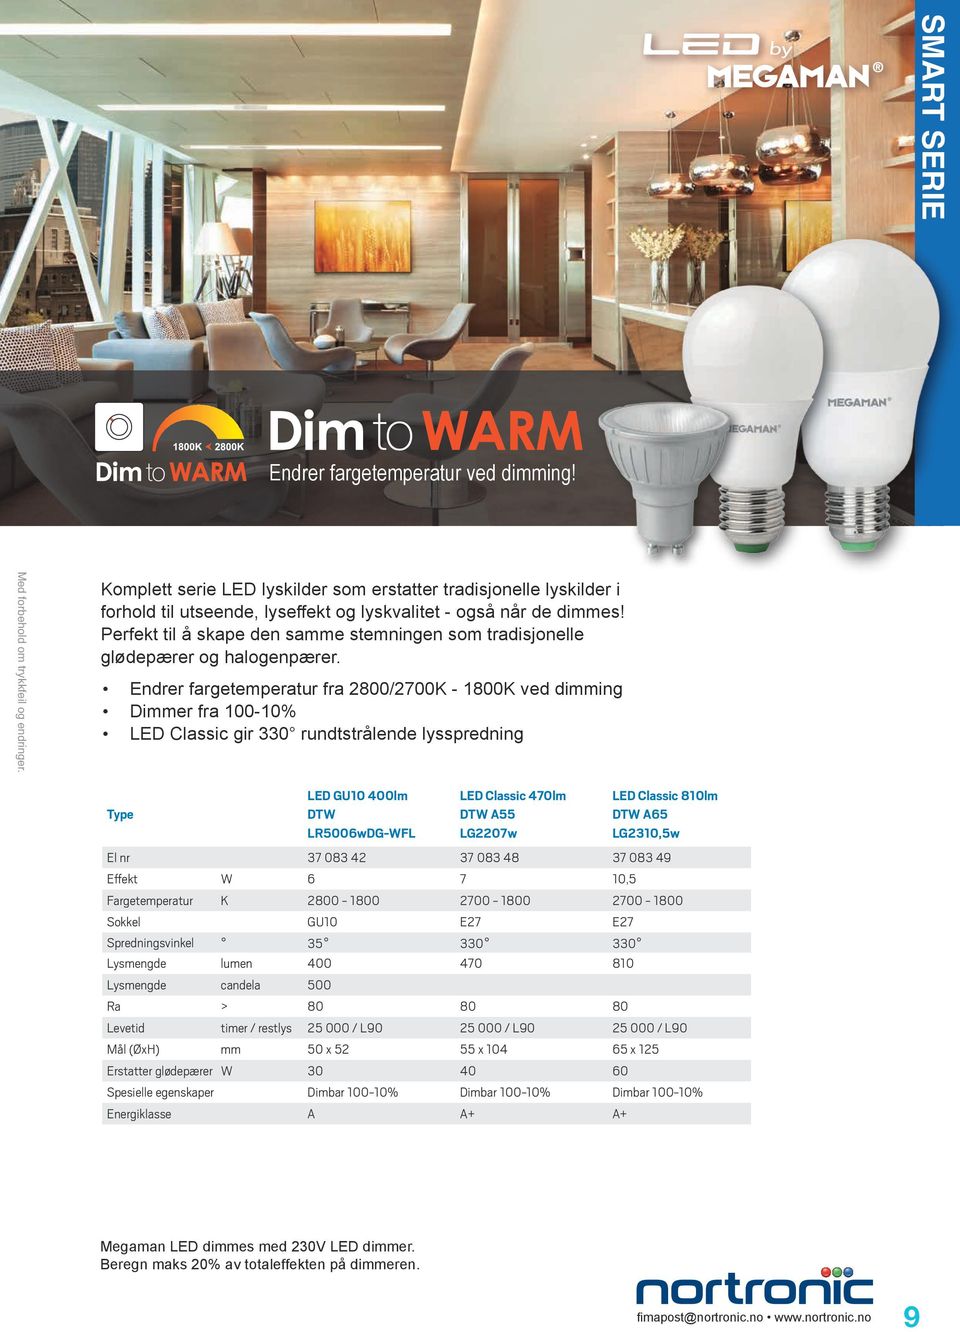 Endrer fargetemperatur fra 2800/2700K - 1800K ved dimming Dimmer fra 100-10% LED Classic gir 330 rundtstrålende lysspredning LED GU10 400lm DTW LR5006wDG-WFL LED Classic 470lm DTW A55 LG2207w LED